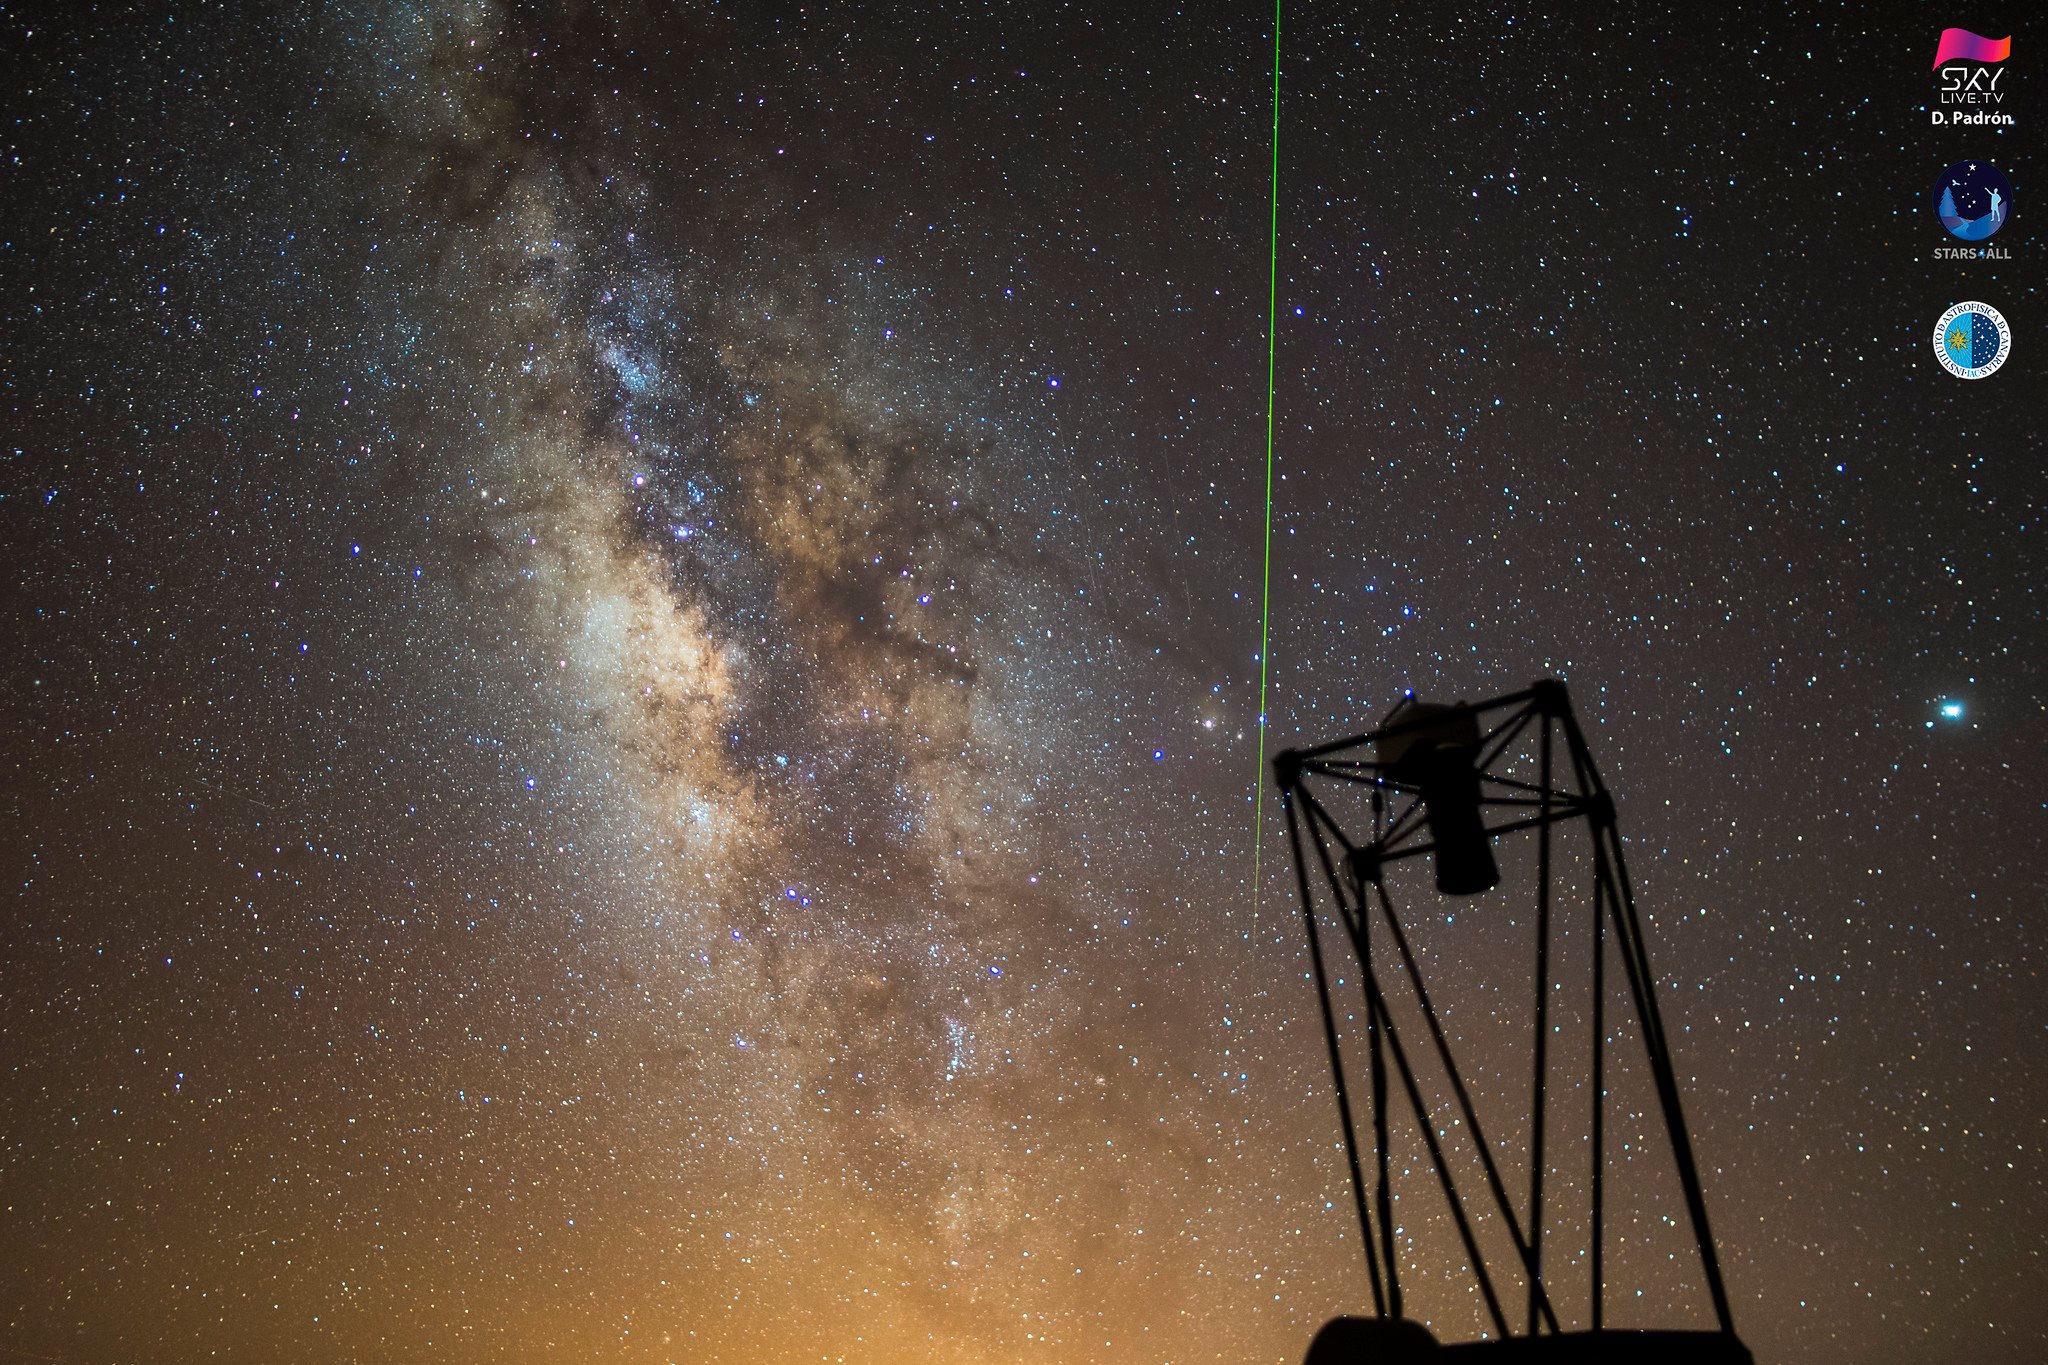 Perseida observada desde el Observatorio del Teide (Tenerife, Islas Canarias, España) la madrugada del día 11 de agosto de 2018. El telescopio que se observa en primer plano es el TAR1 y en vertical la Vïa Láctea.